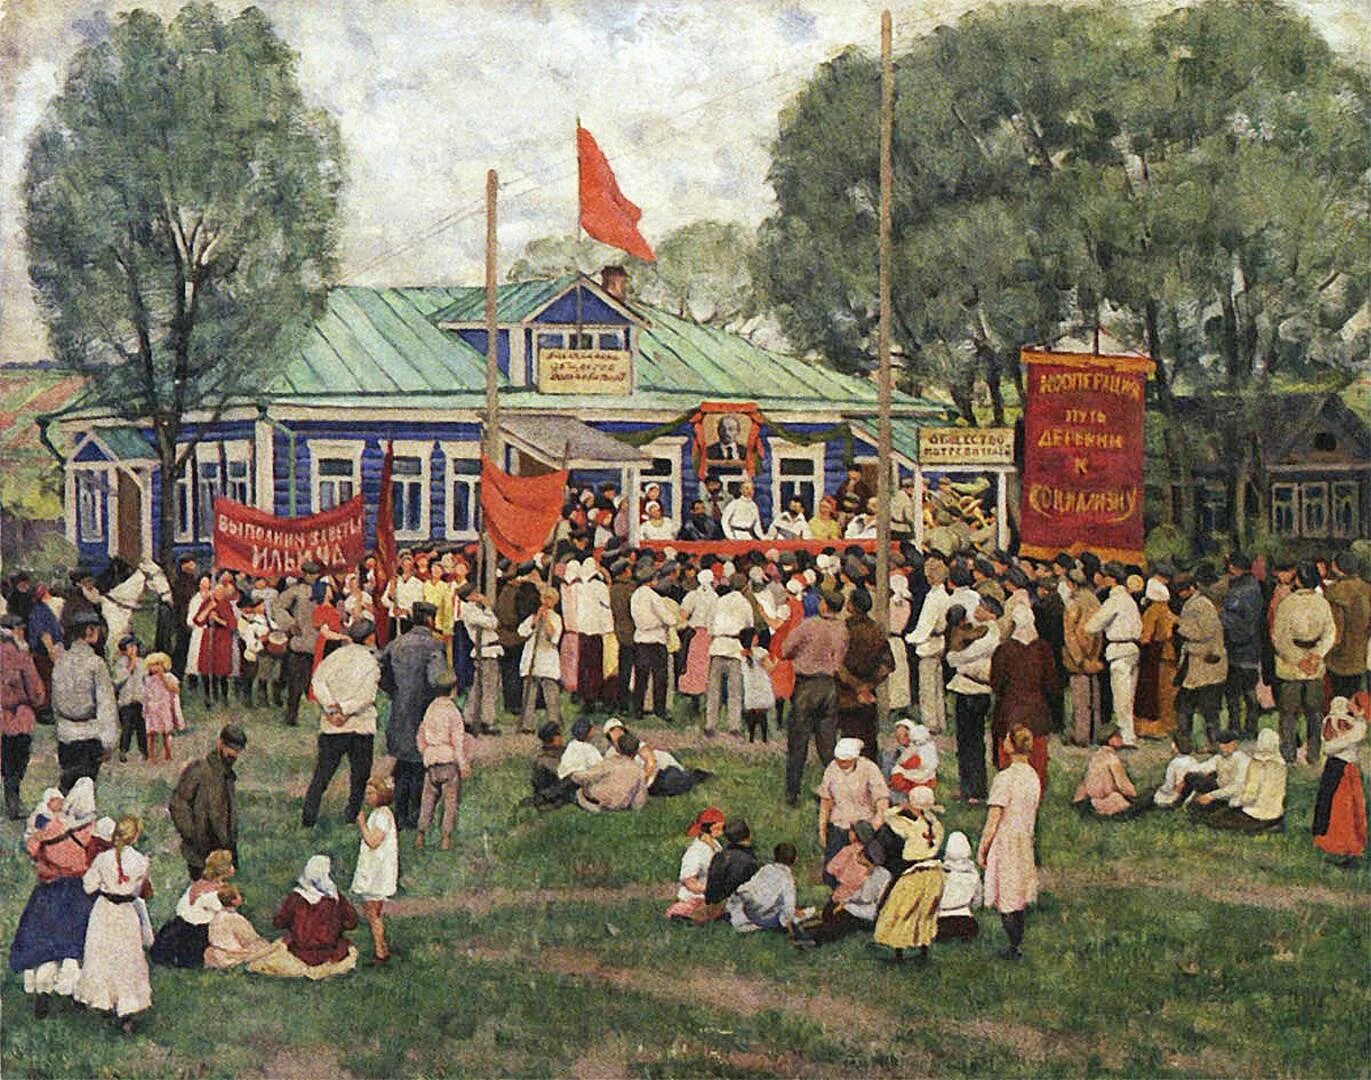 Картина гулянье 1922 год. Юон праздник кооперации в деревне.